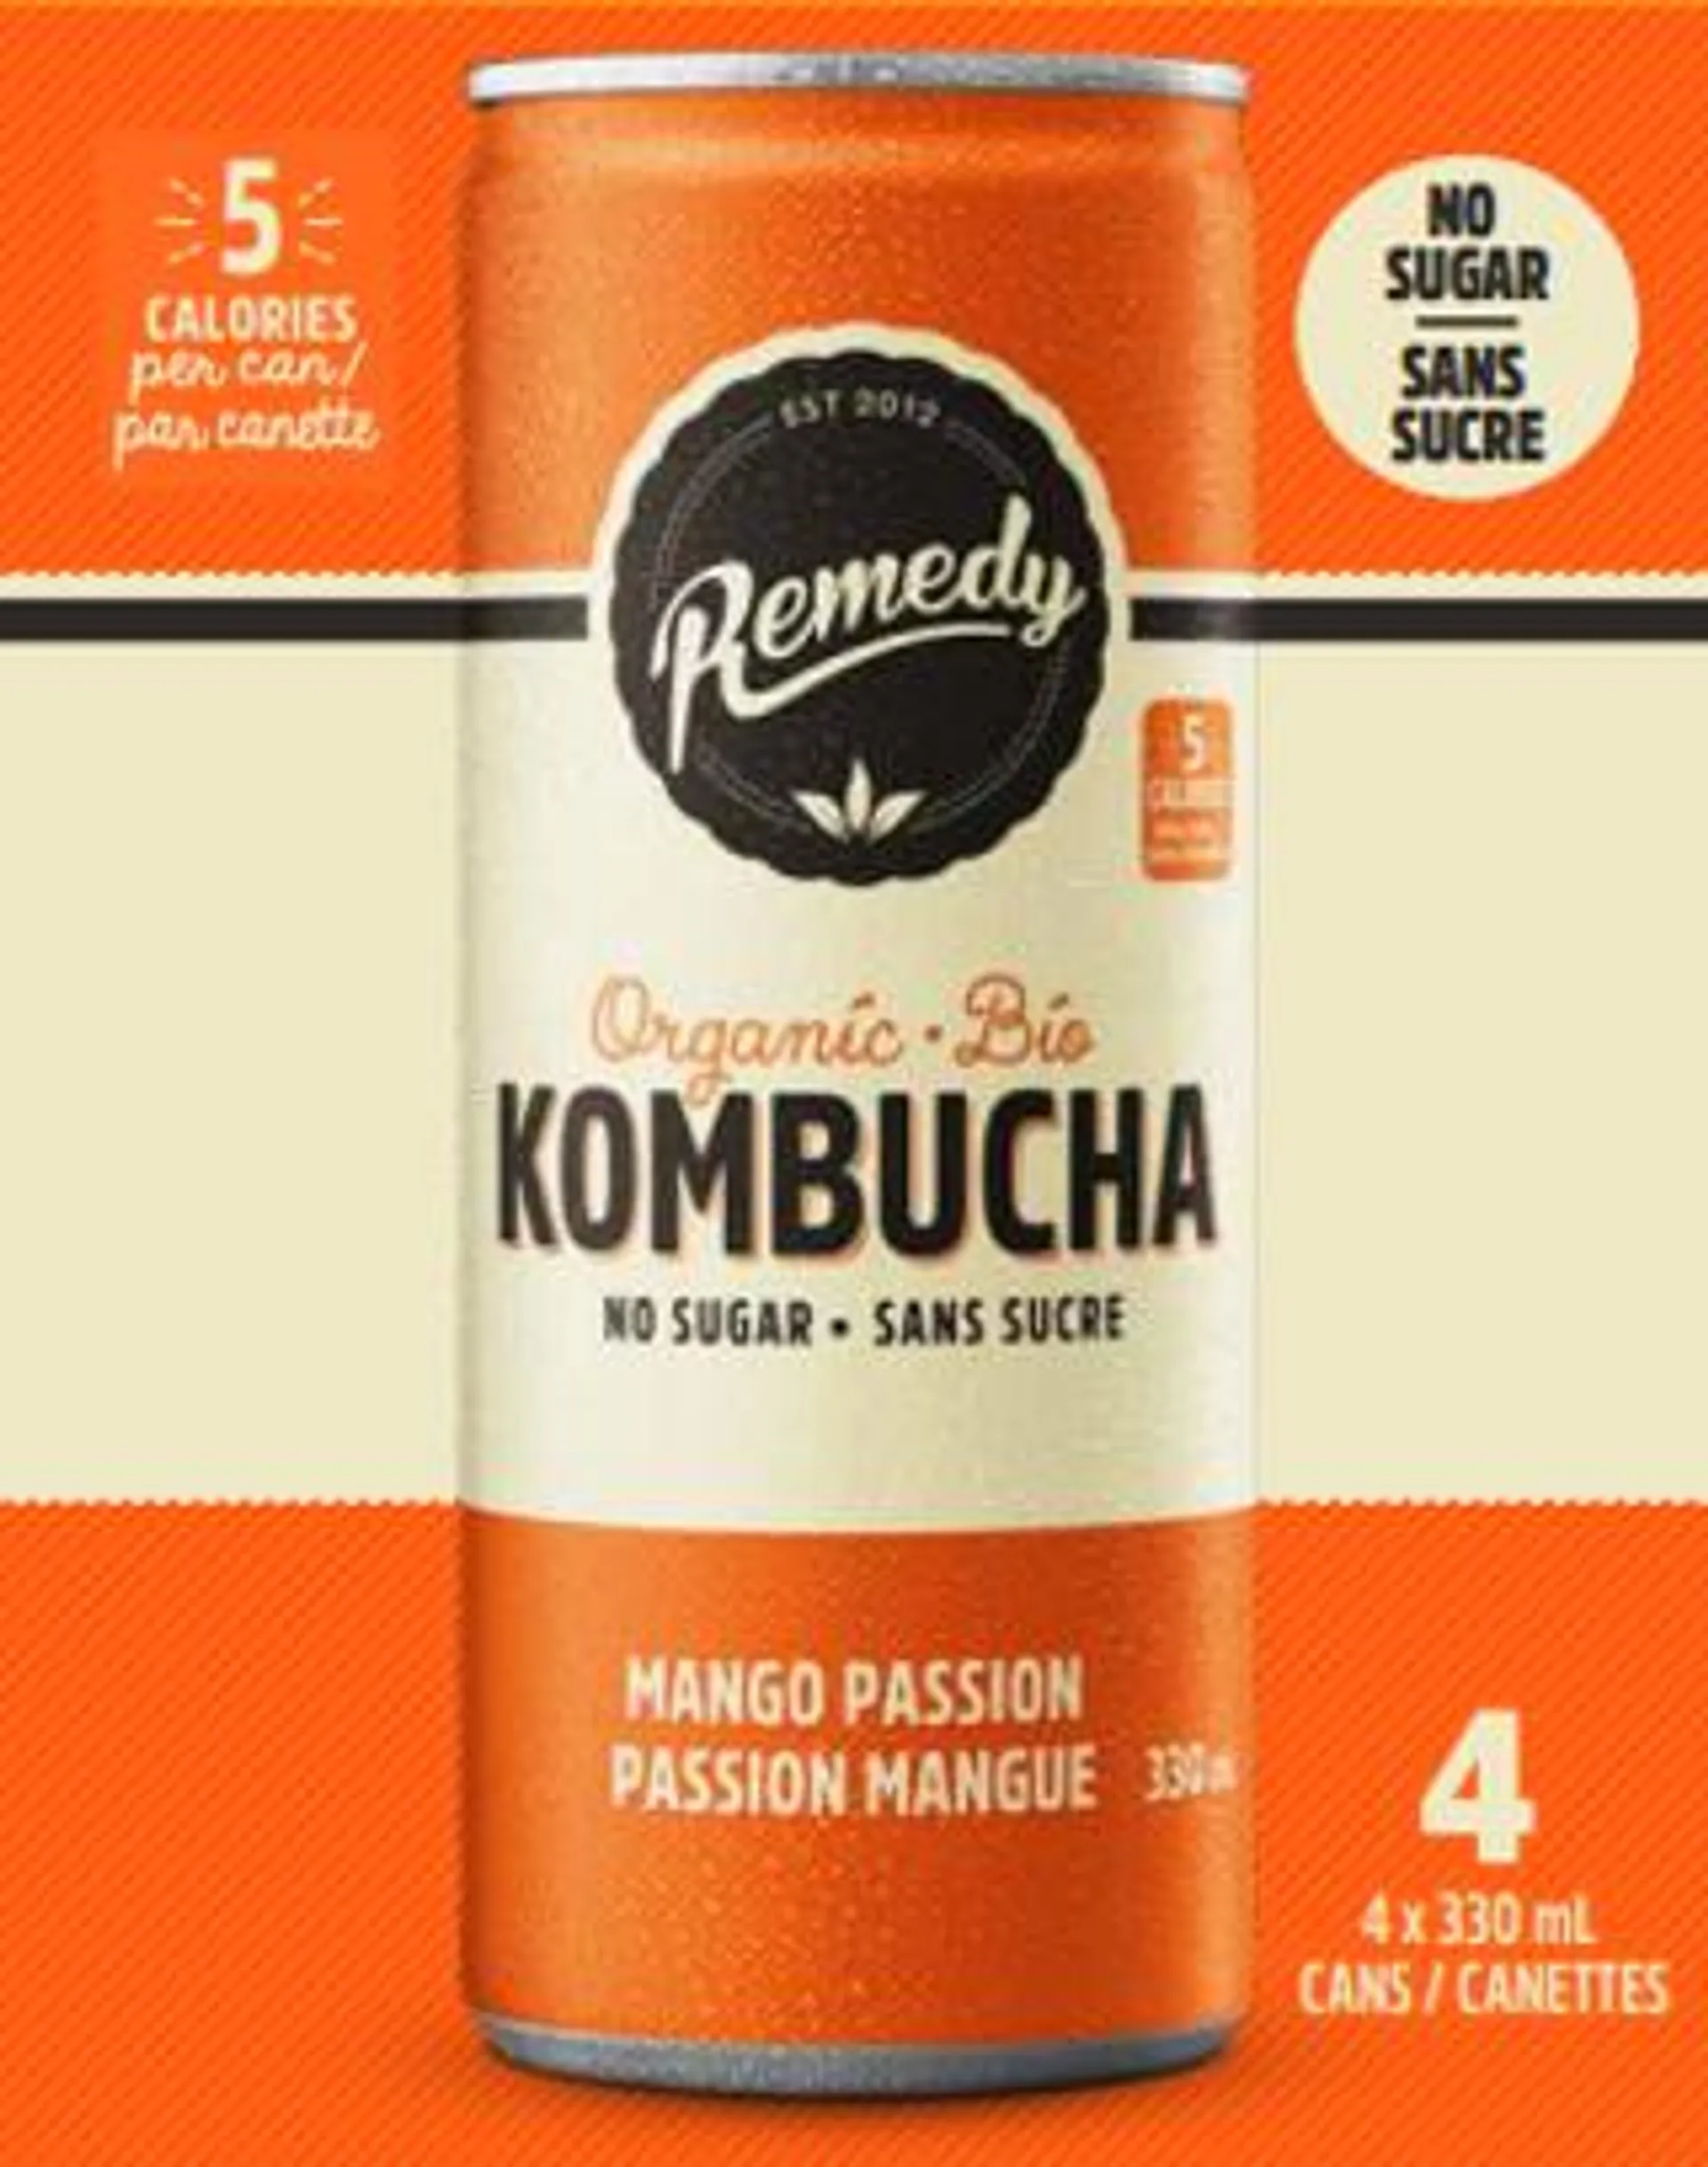 Mango Passion Kombucha